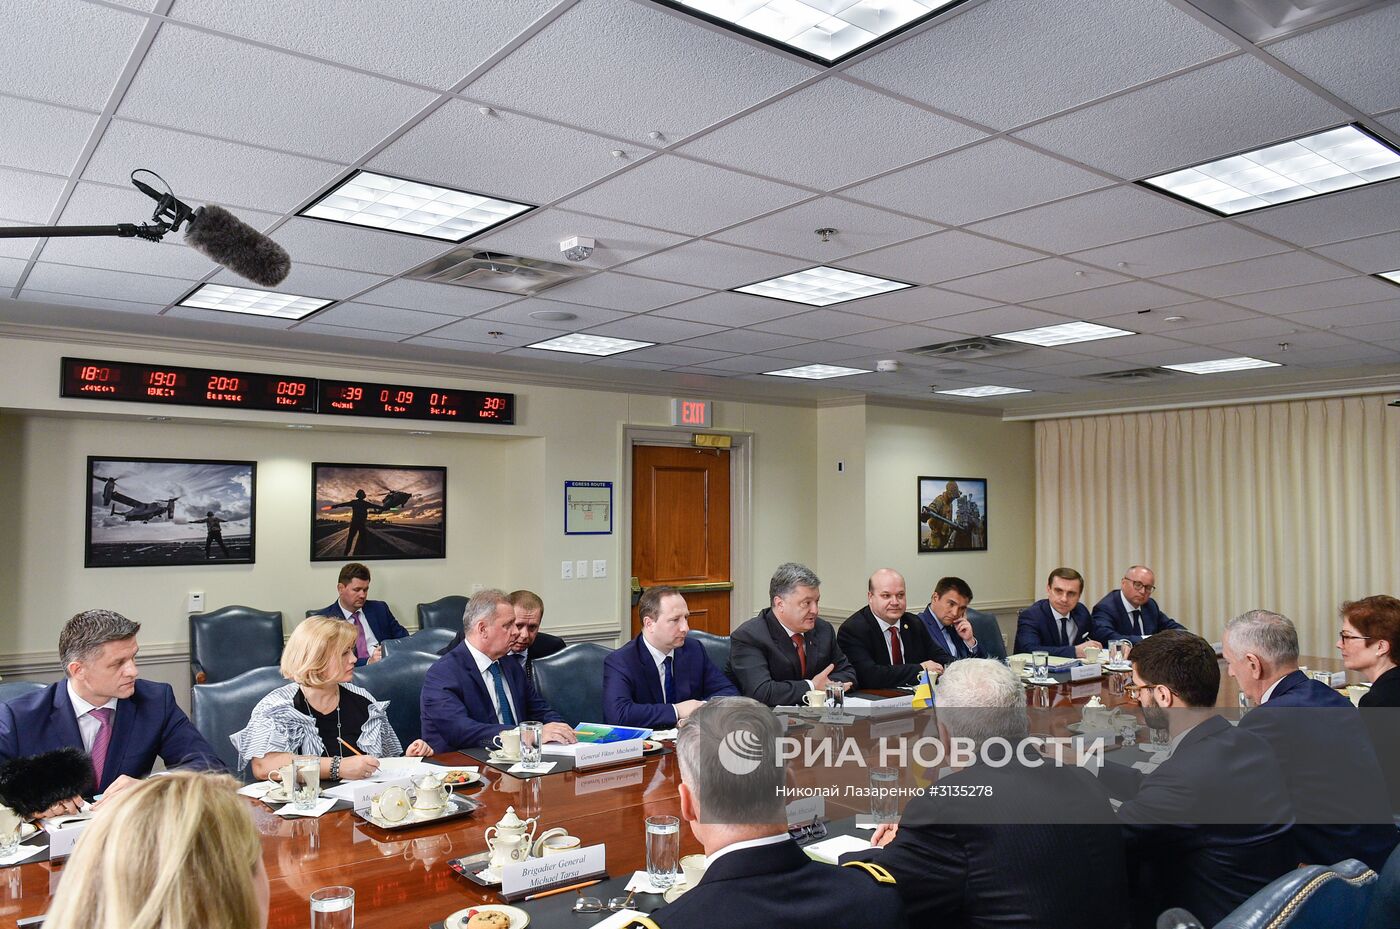 Визит президента Украины П. Порошенко в США